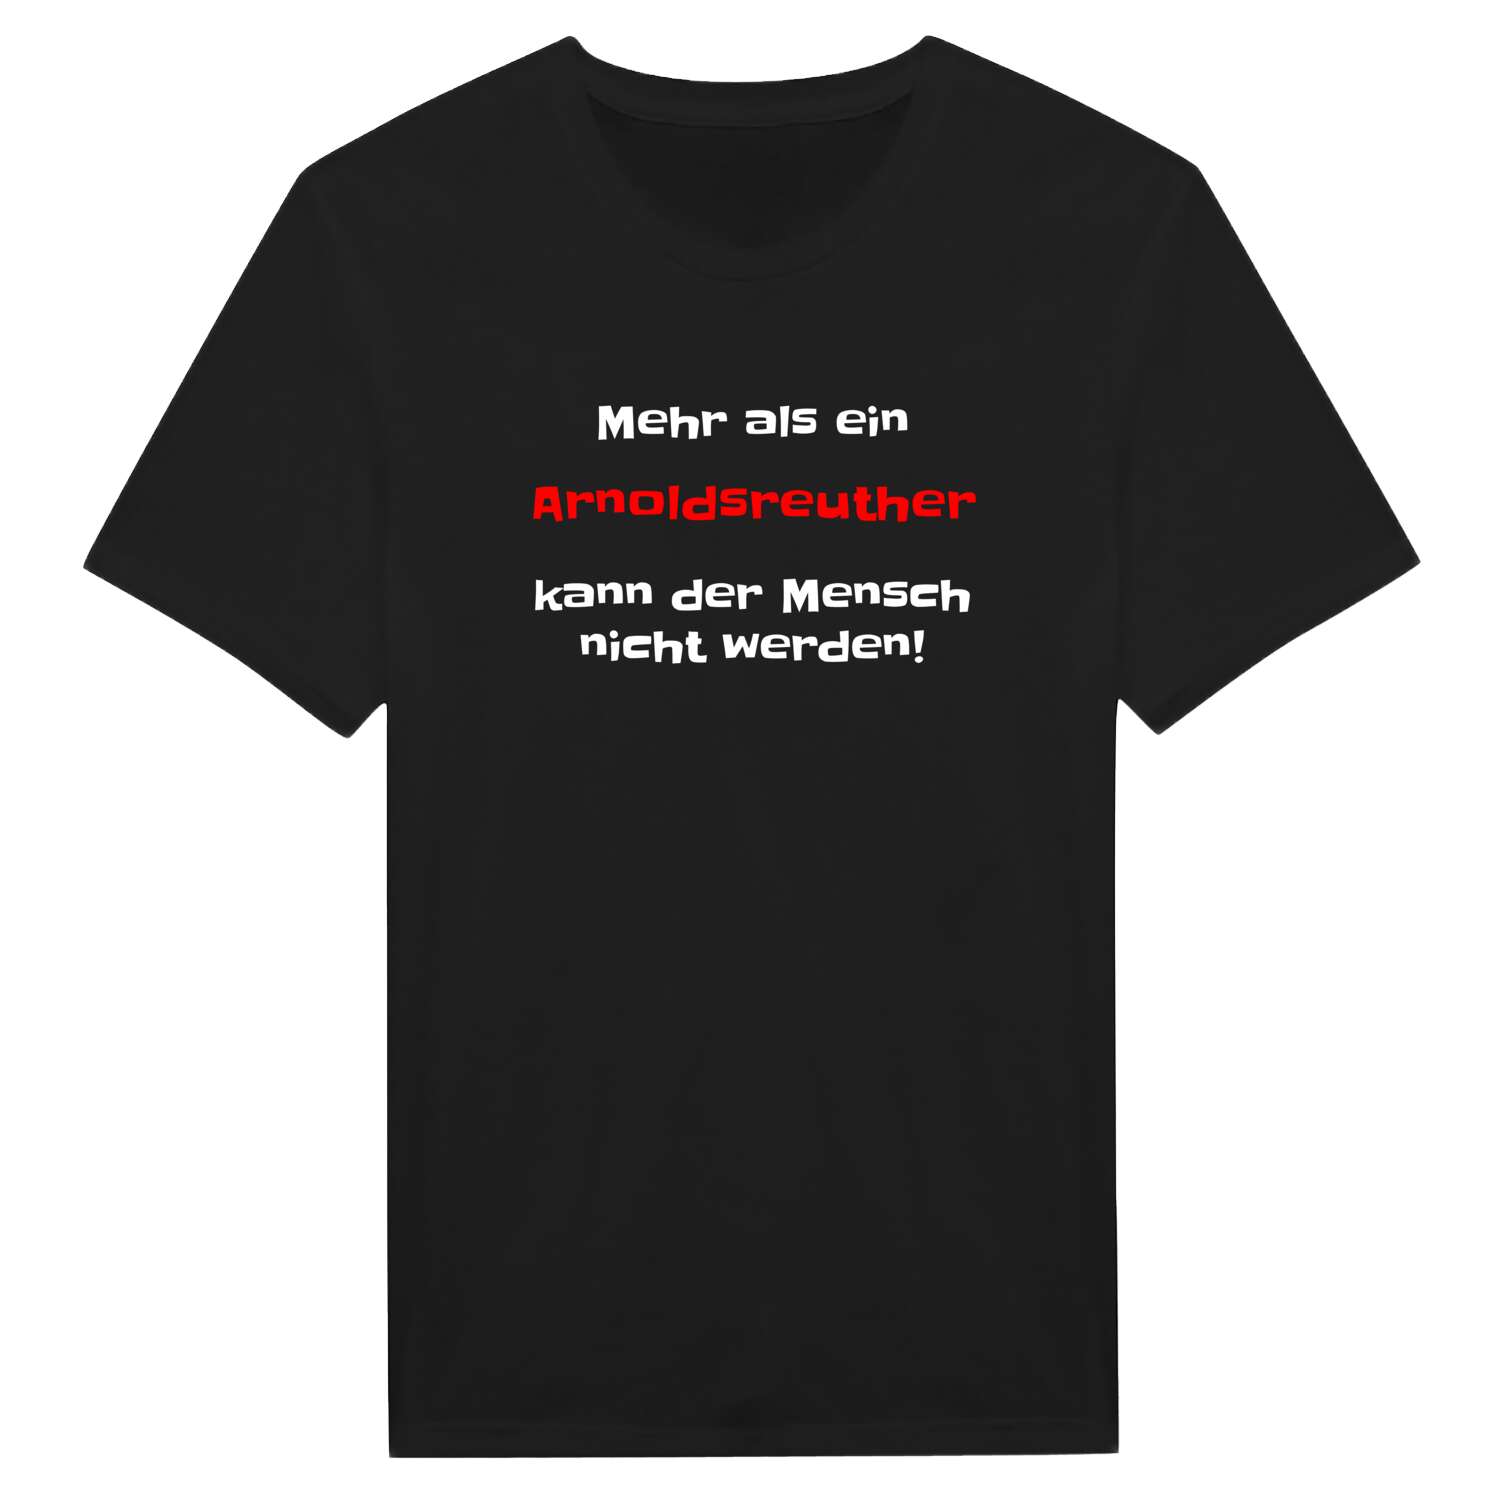 Arnoldsreuth T-Shirt »Mehr als ein«